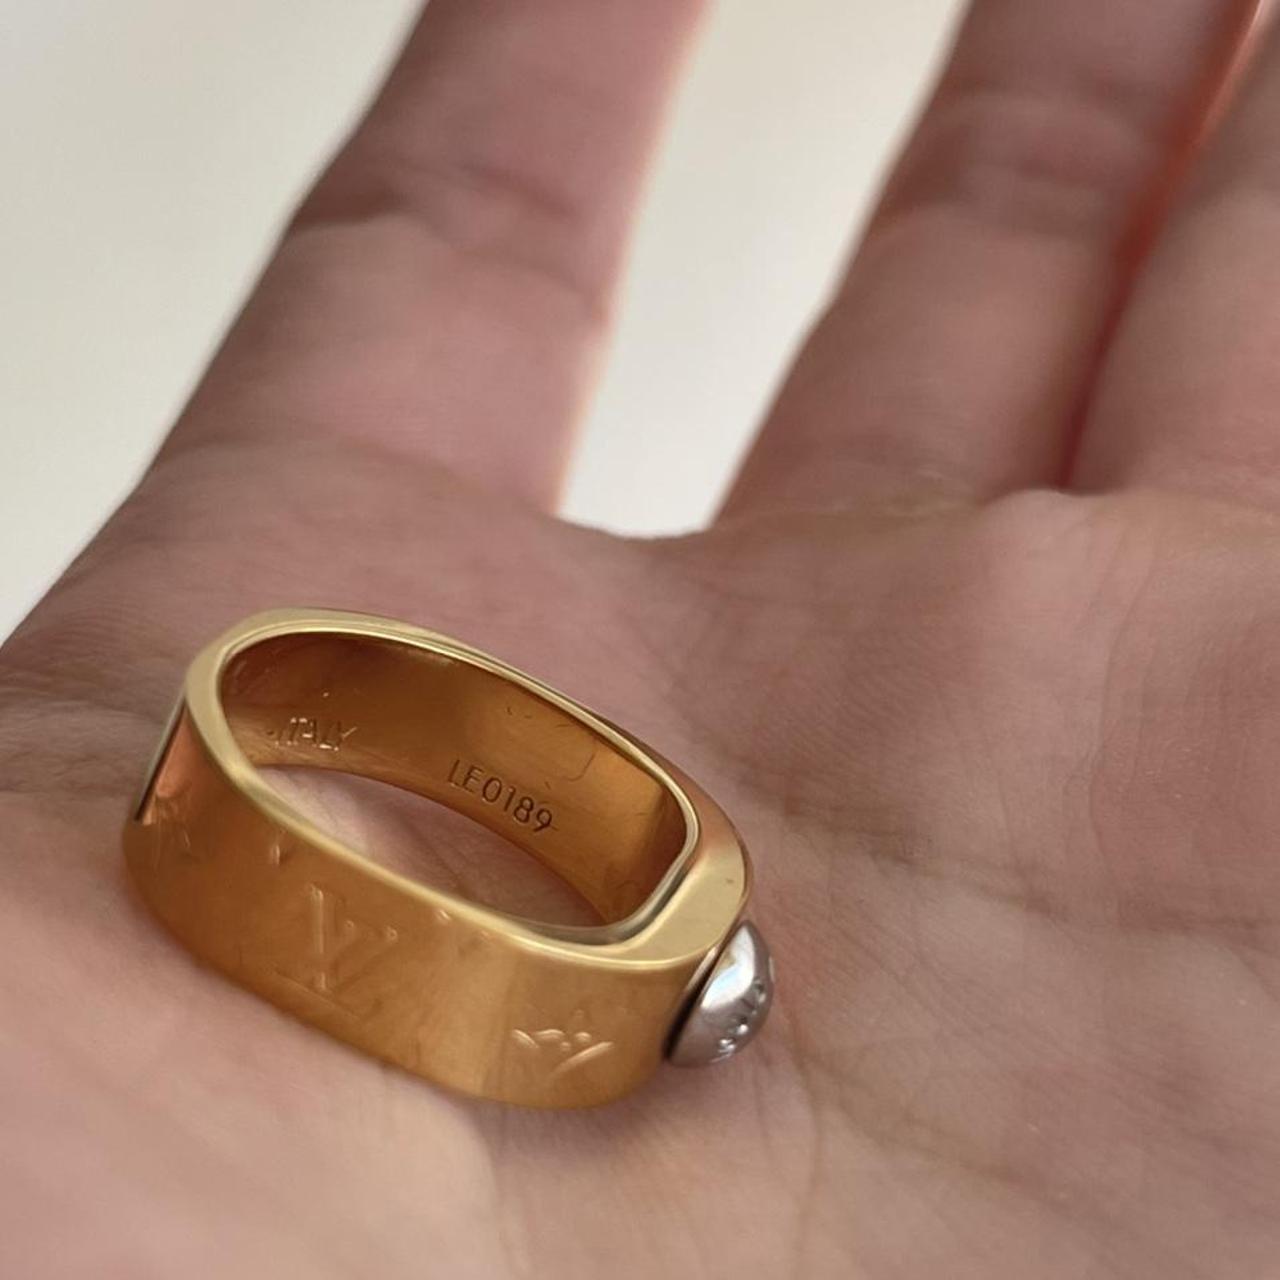 Louis Vuitton Nanogram Ring (Silver)- Size 6